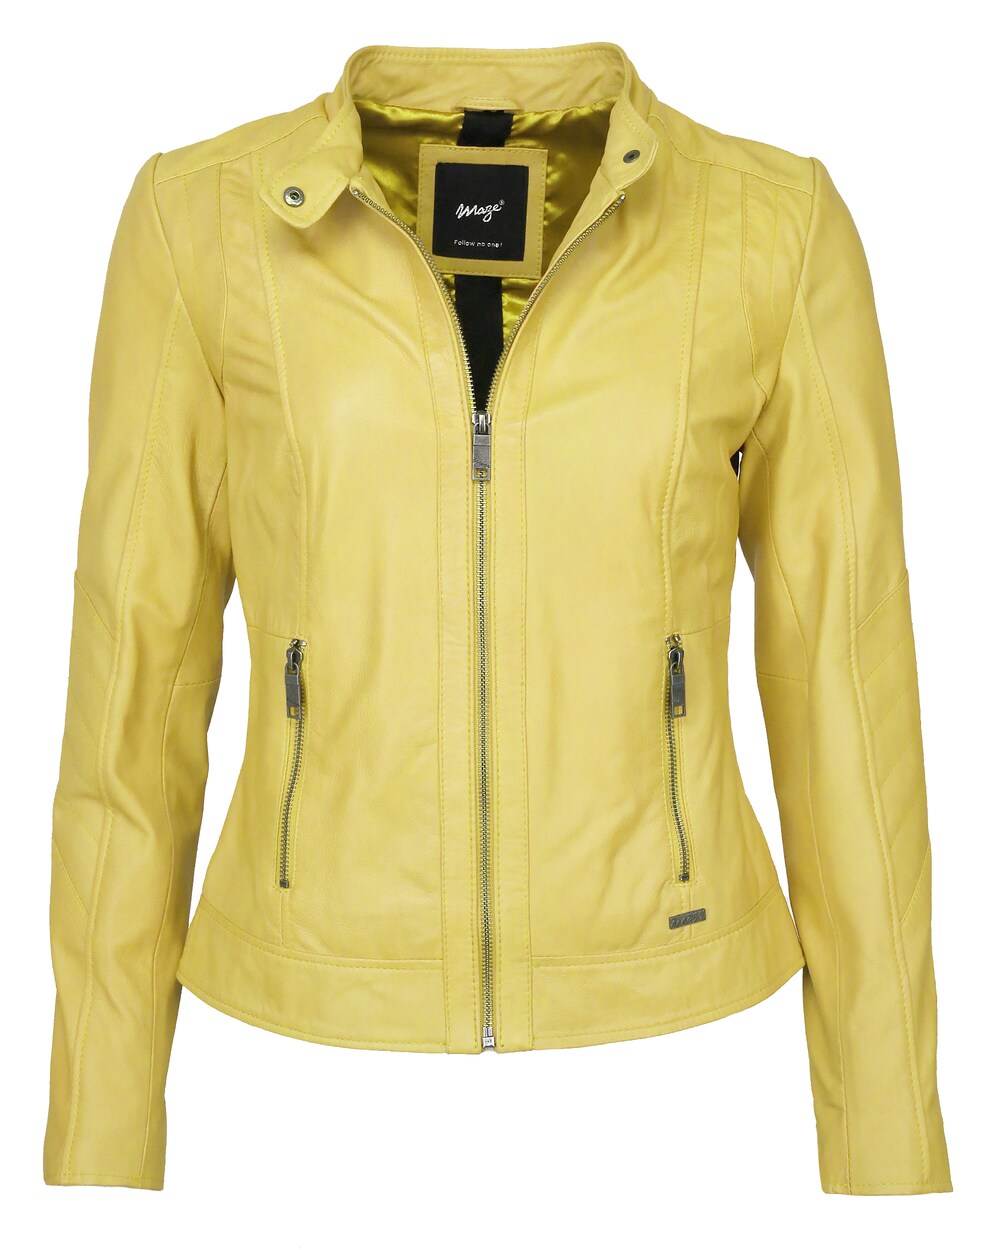 Межсезонная куртка Maze Marcie, лимон желтый межсезонная куртка maze marcie черный